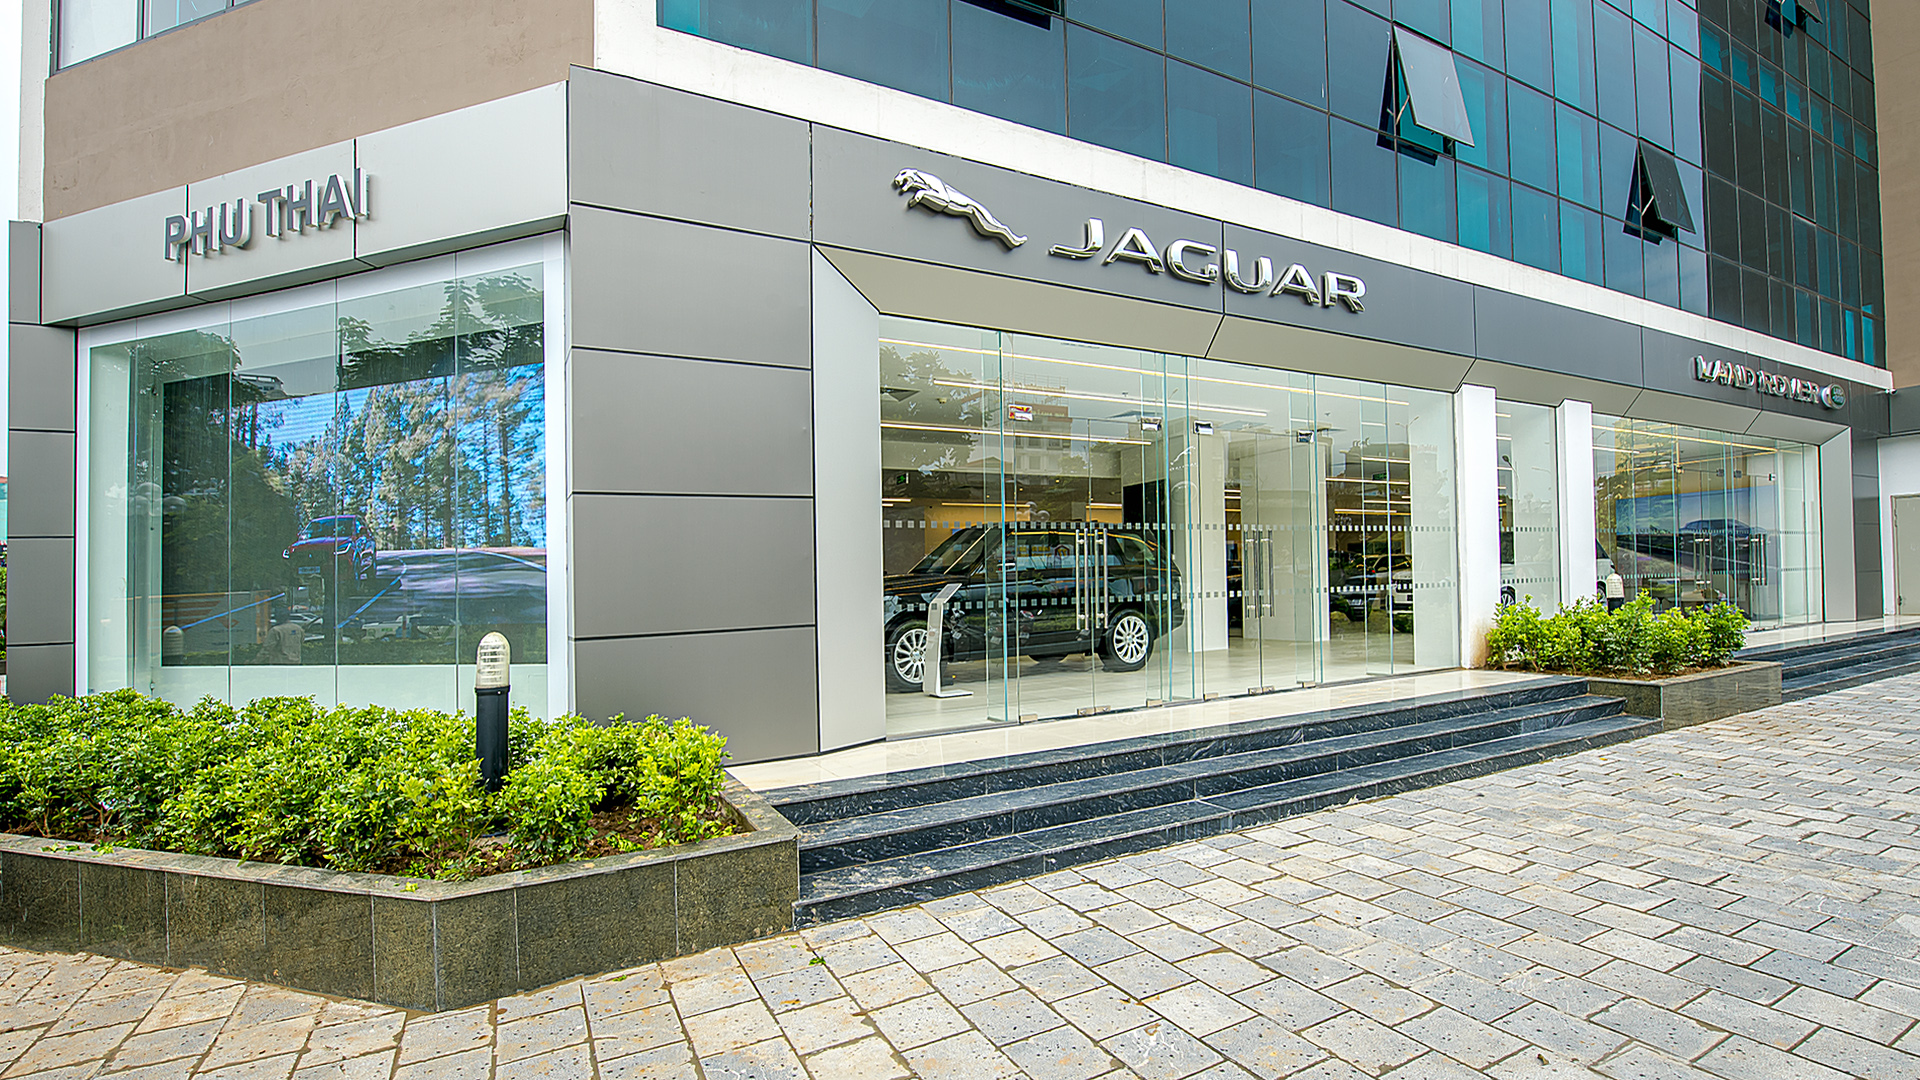 Danh sách địa chỉ trung tâm bảo hành Jaguar cập nhật mới nhất